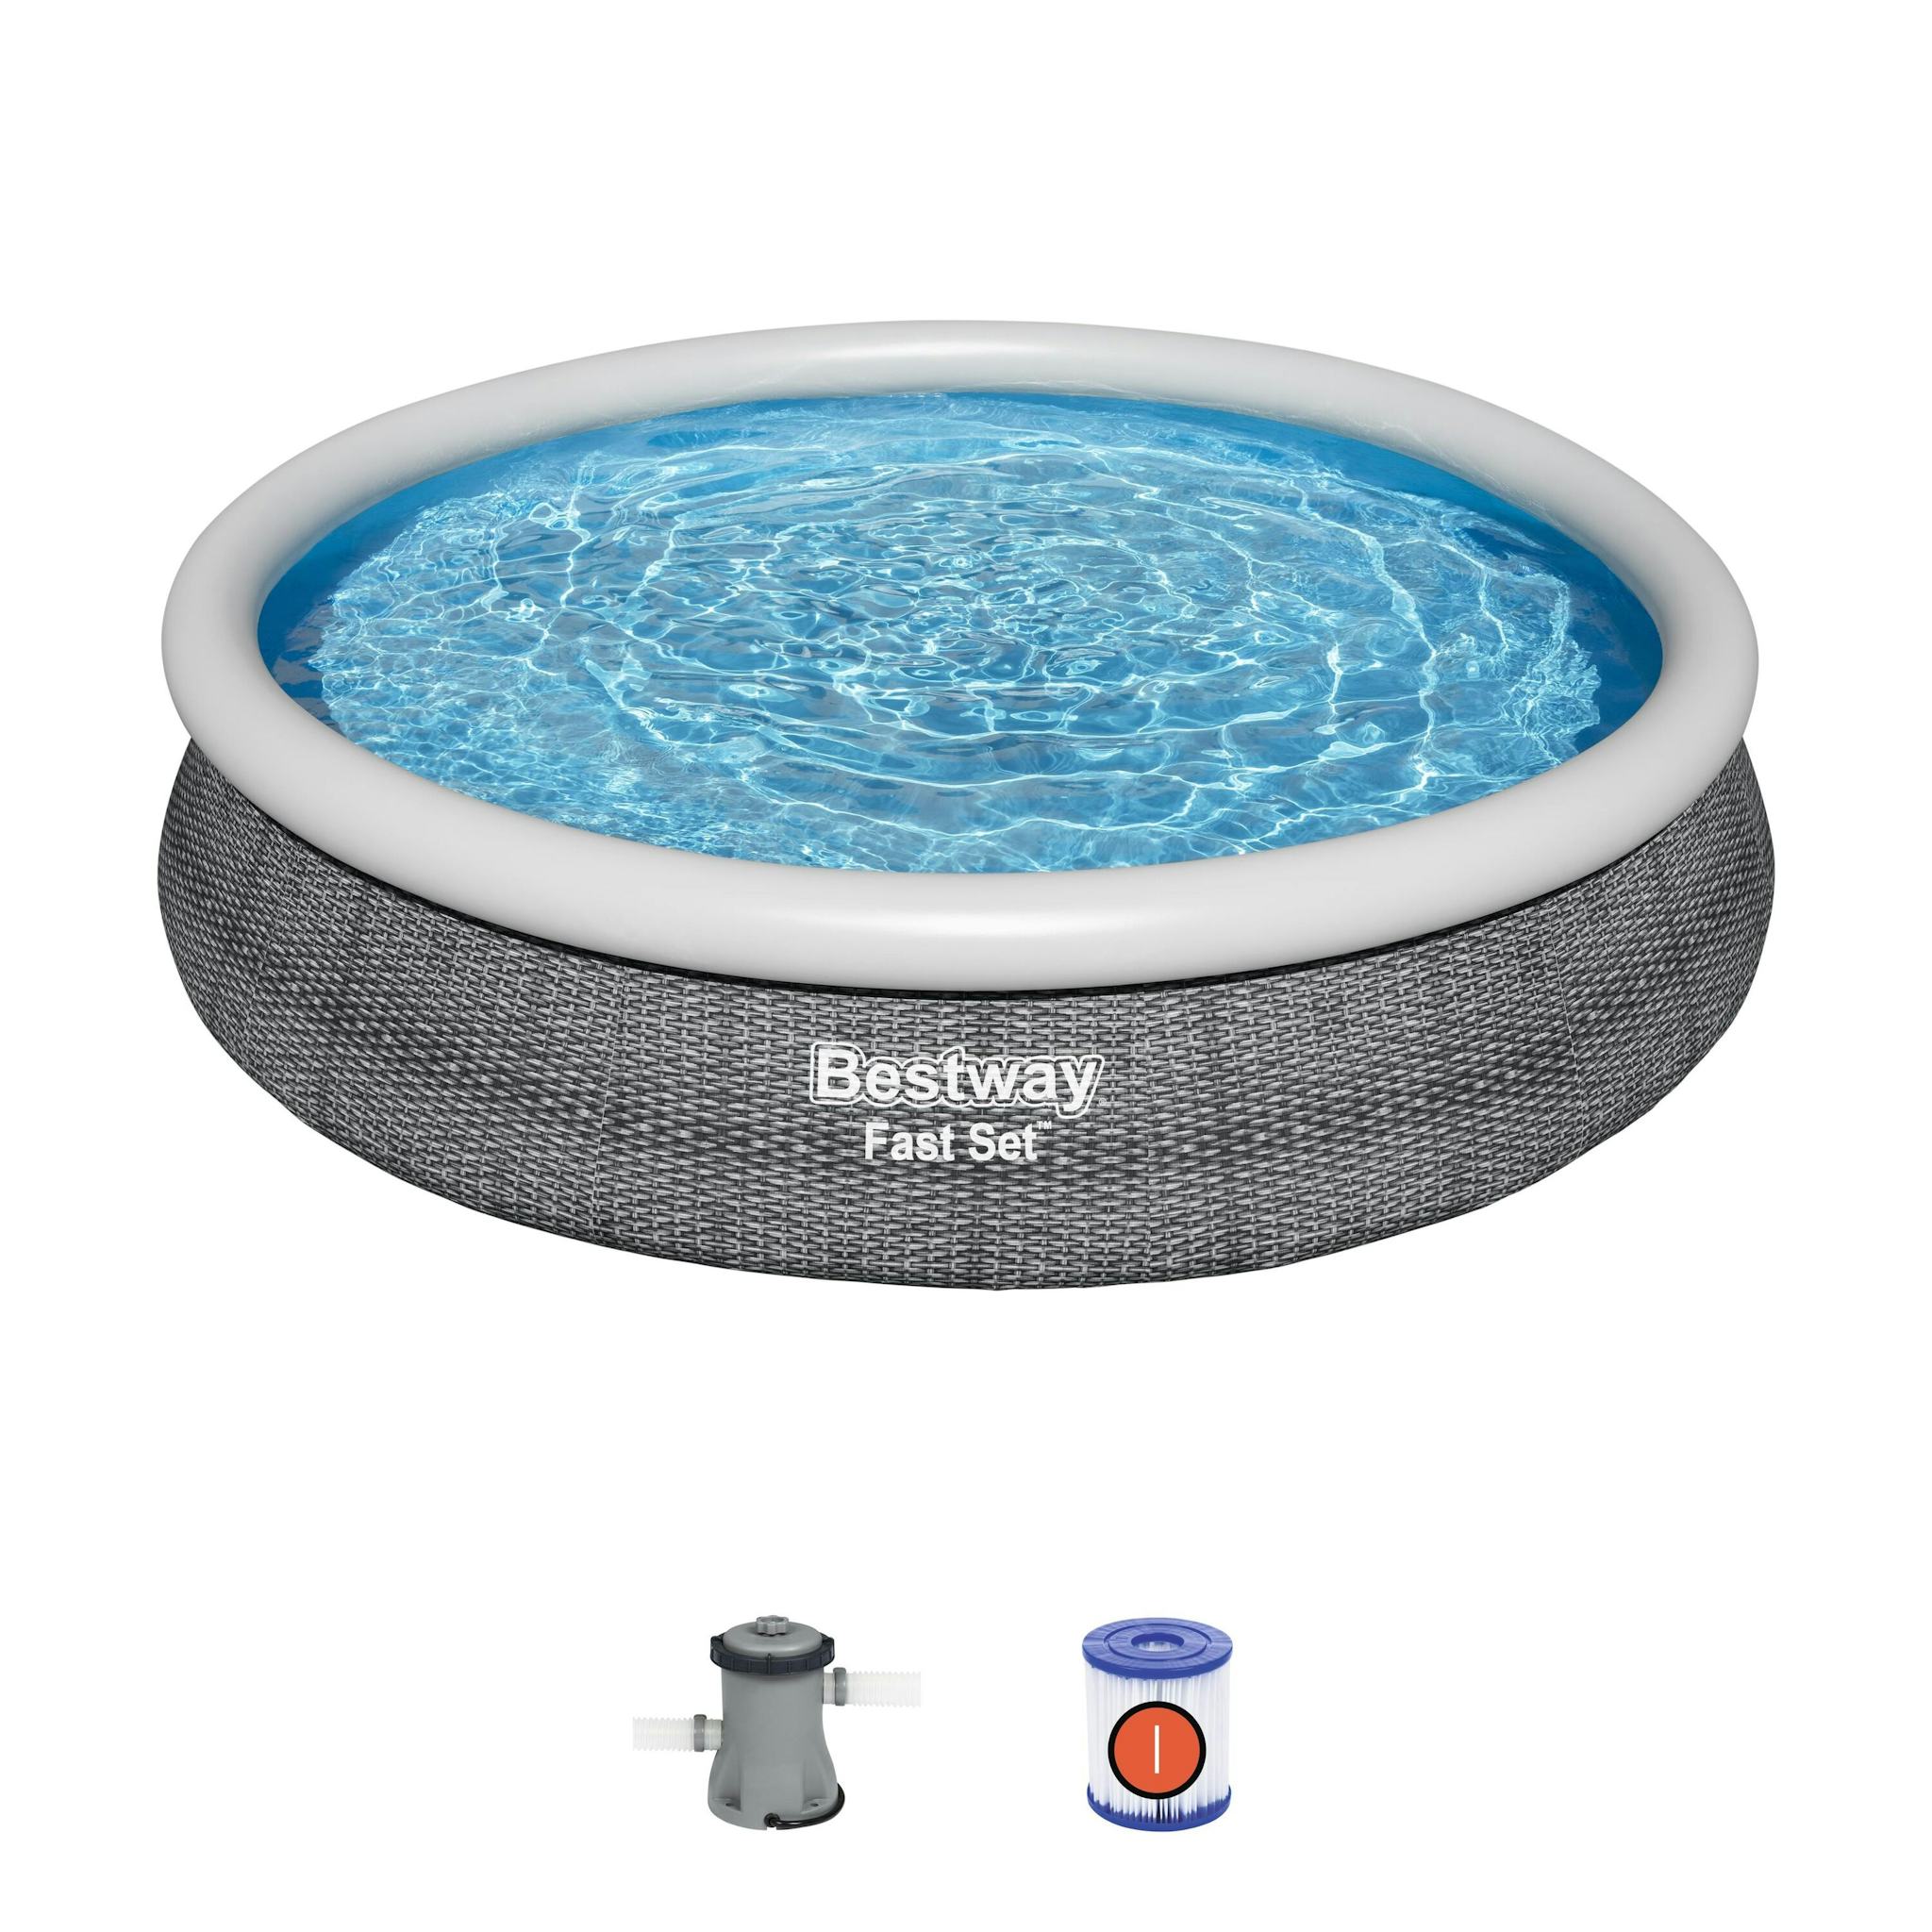 Bovengronds zwembad Fast Set grijze bovengrondse ronde opblaasbare set van 366x76 cm Bestway 2